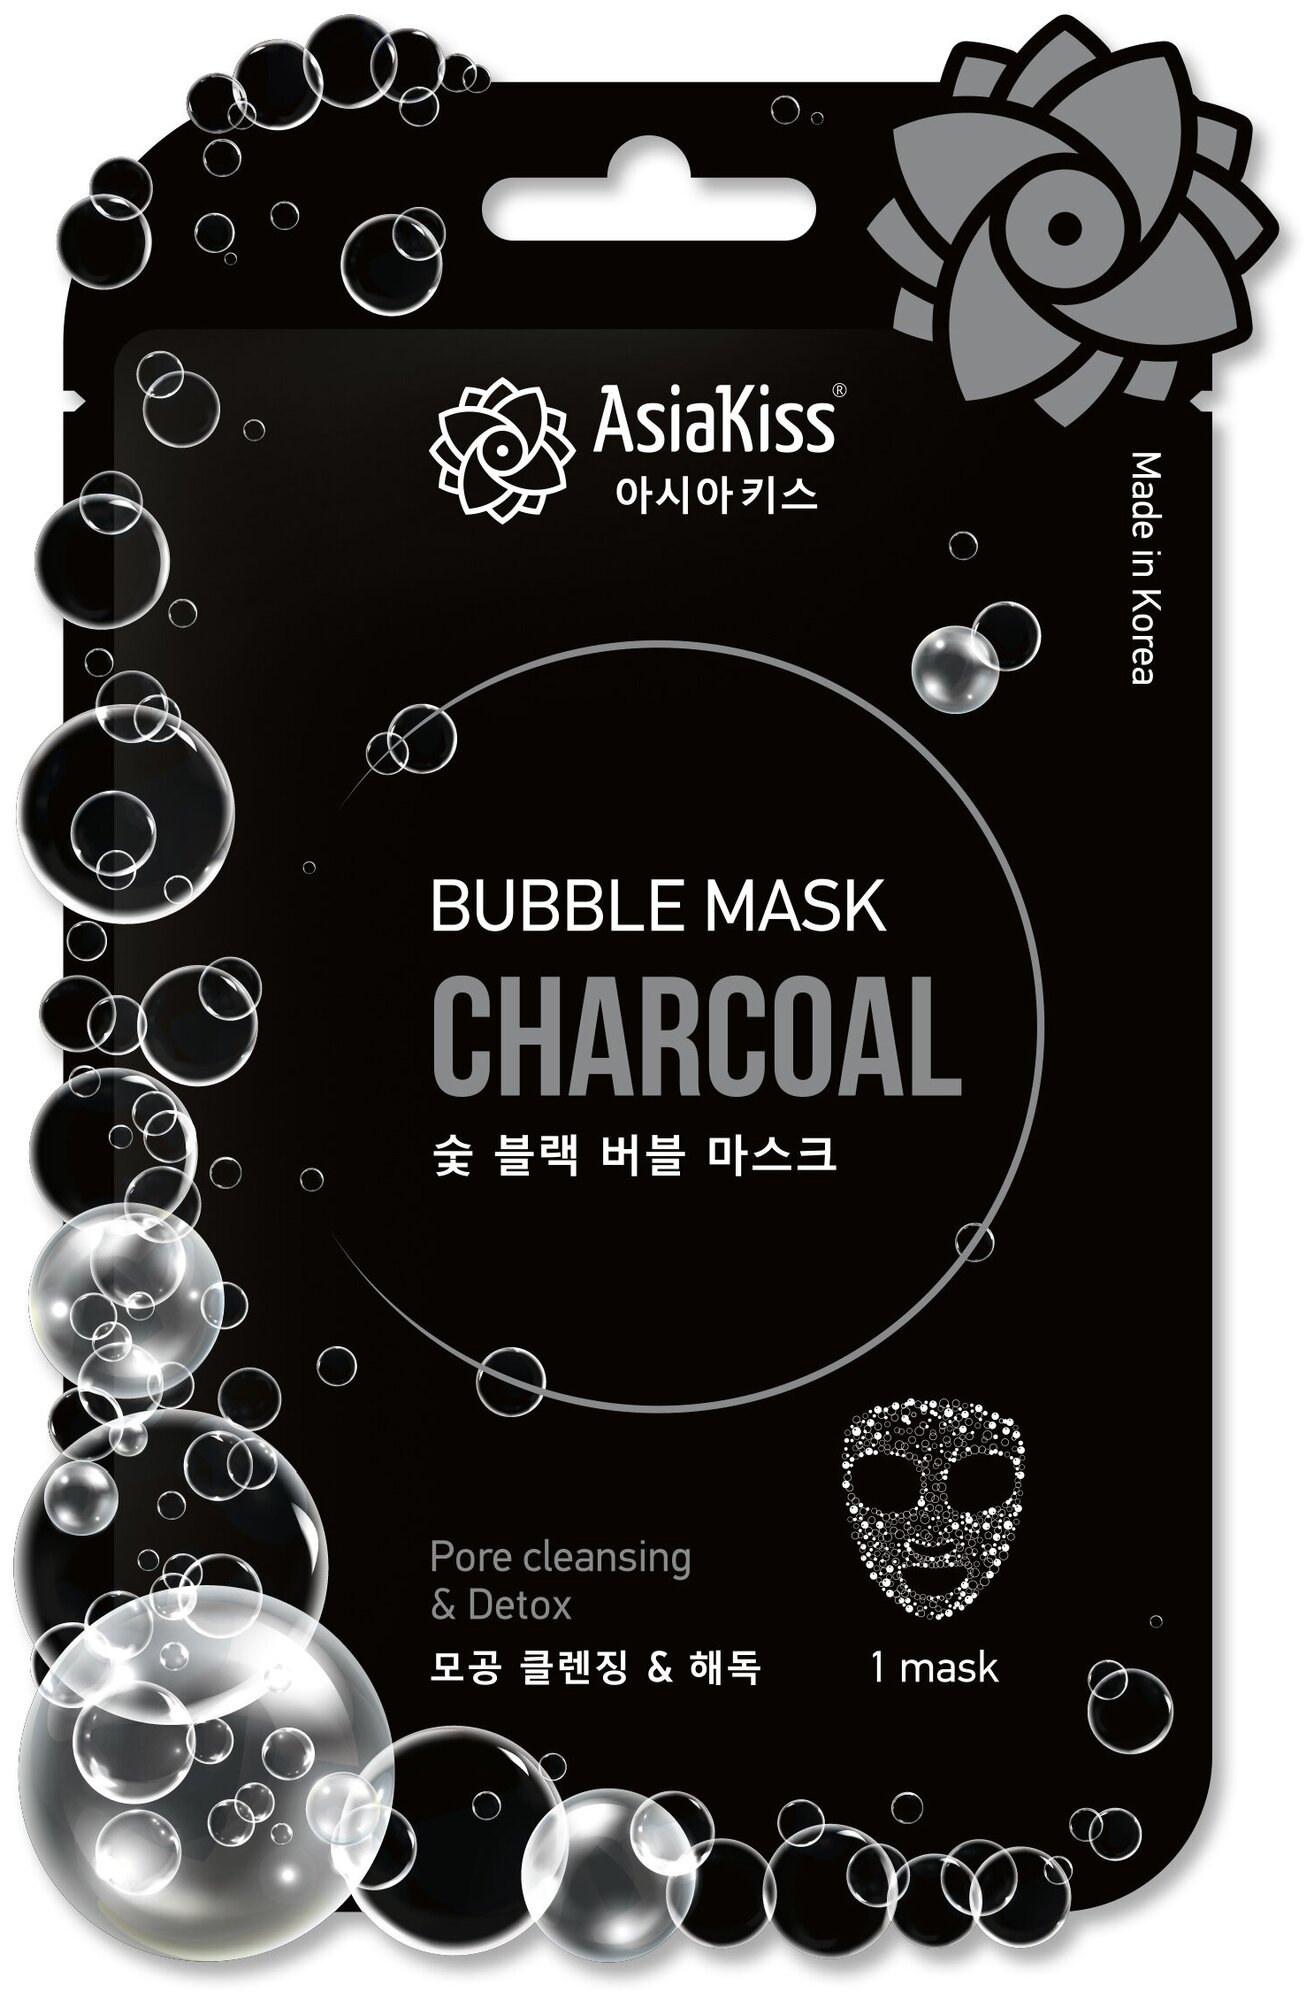 Маска для лица AsiaKiss charcoal bubble mask черная пузырьковая маска с экстрактом древесного угля 20мл AsiaKiss International Corporation - фото №1